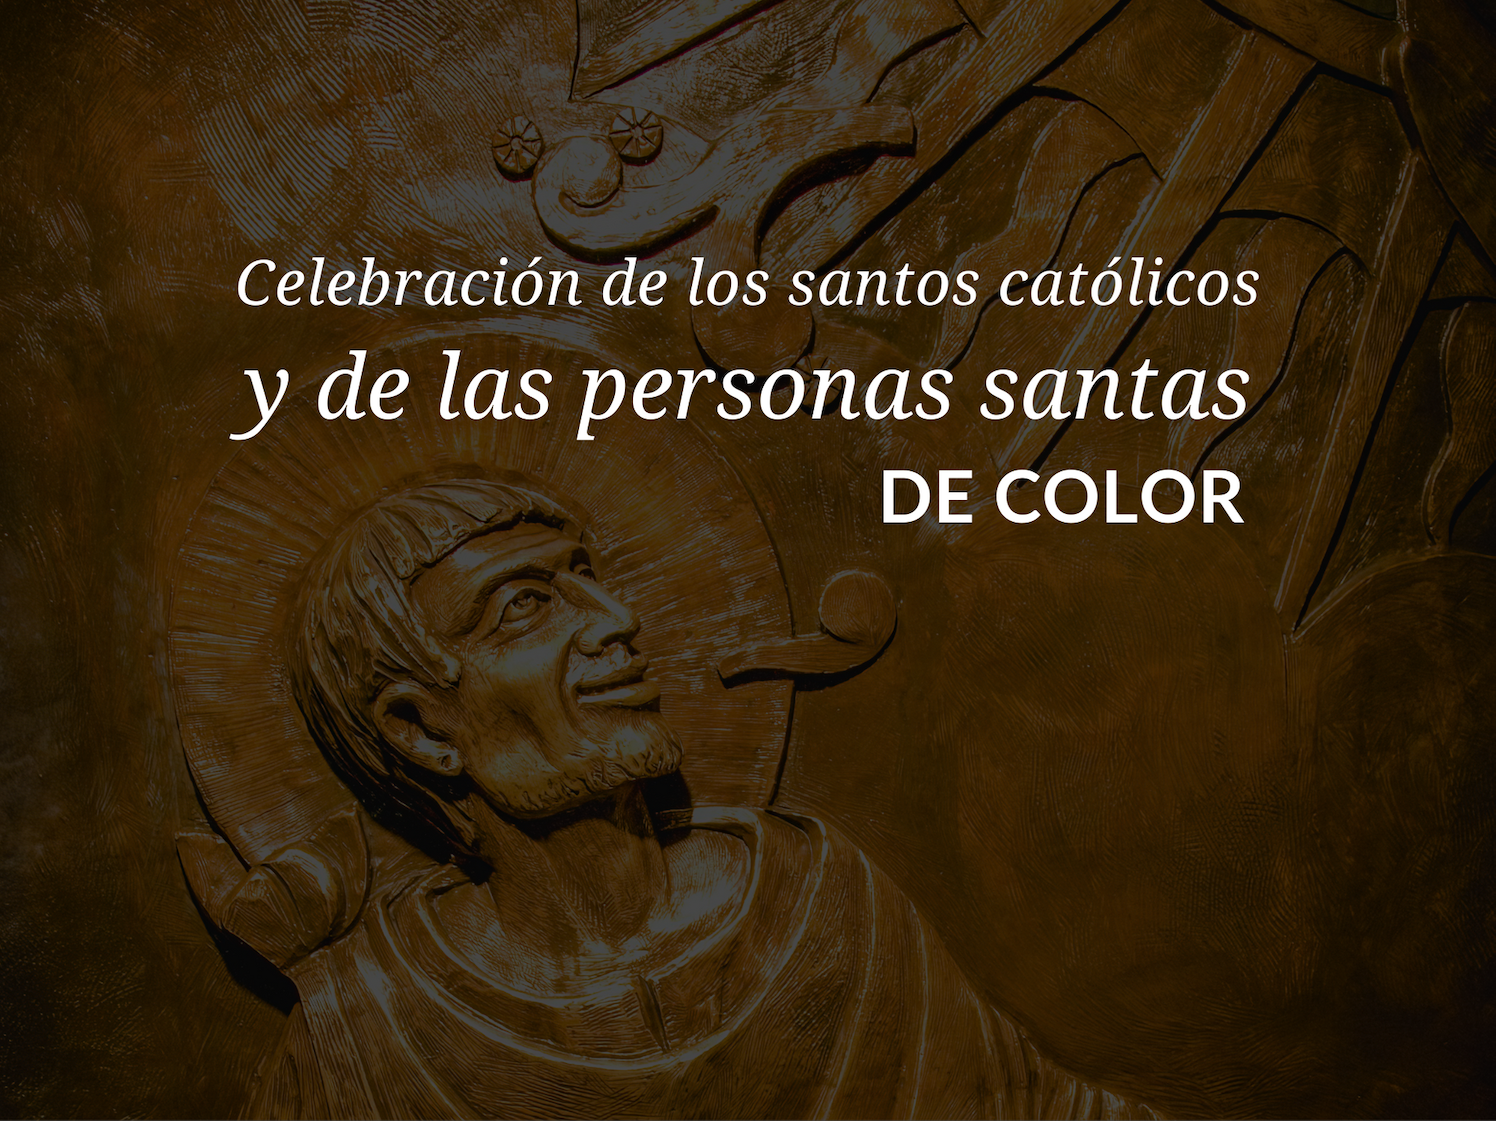 Celebracion de los santos catolicos y de las personas santas de color